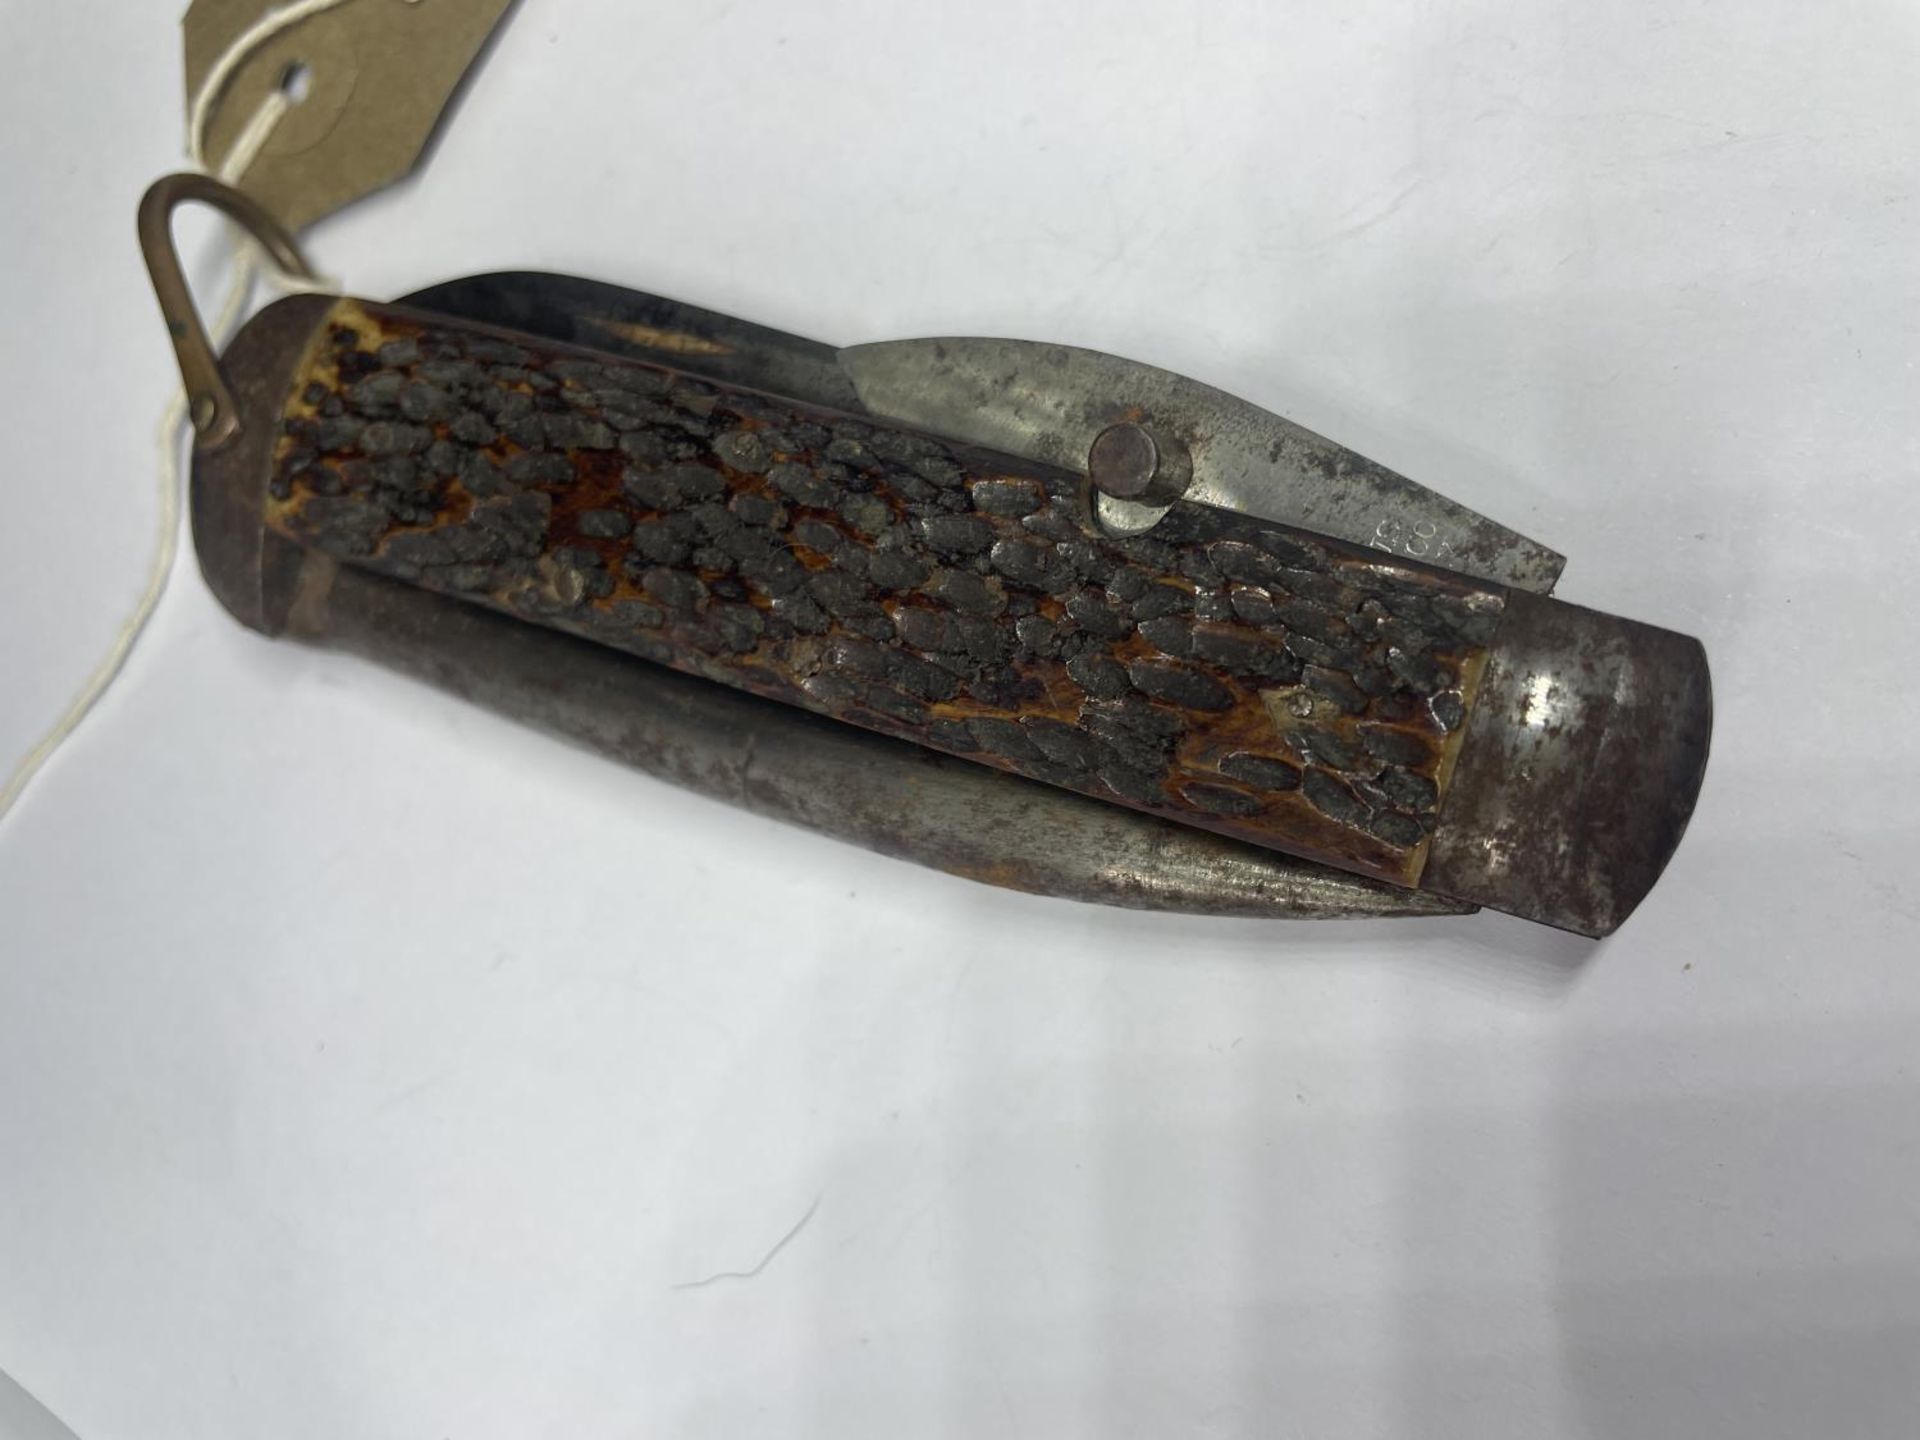 A CAMILLUS NY KNIFE - Image 4 of 4